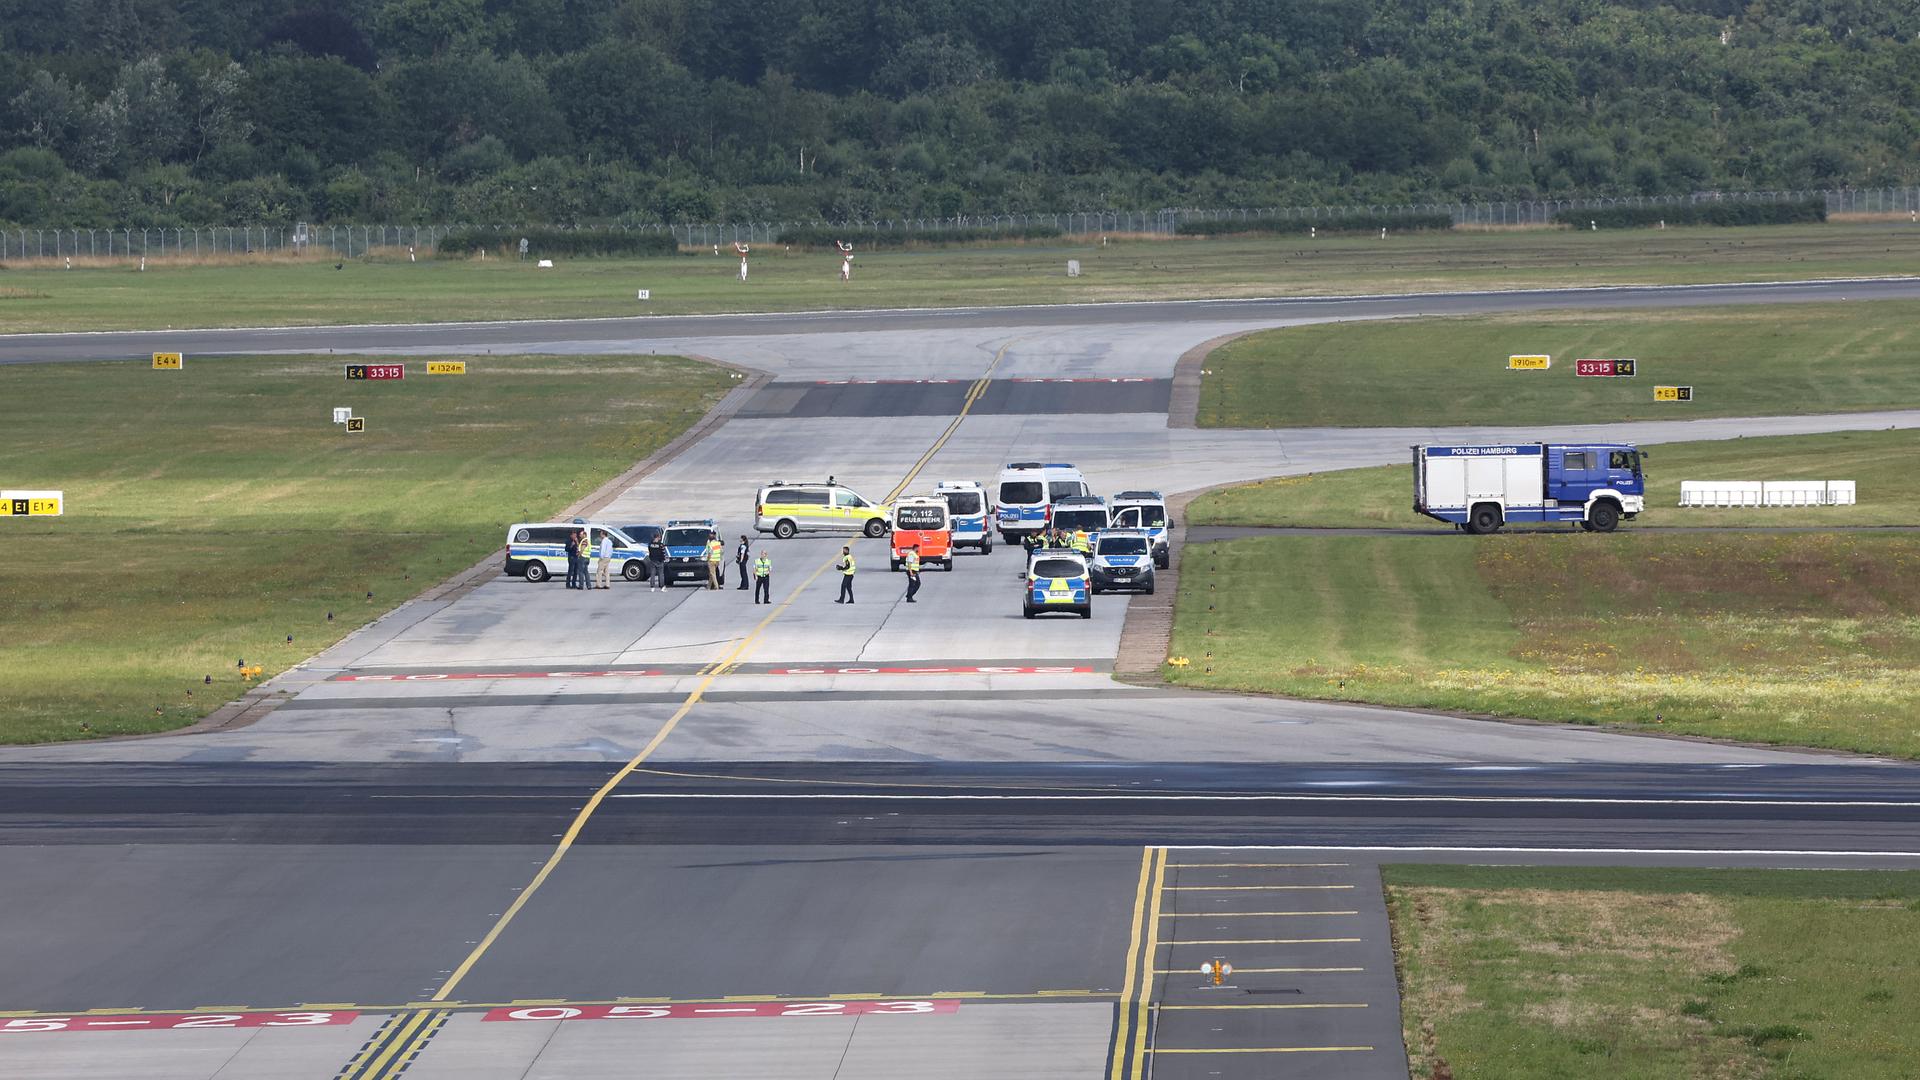 Blick auf das Rollfeld am Flughafen Hamburg: Es sind weit entfernt Einsatzwagen und einzelne Menschen zu sehen. Ansonsten ist das Rollfeld leer.